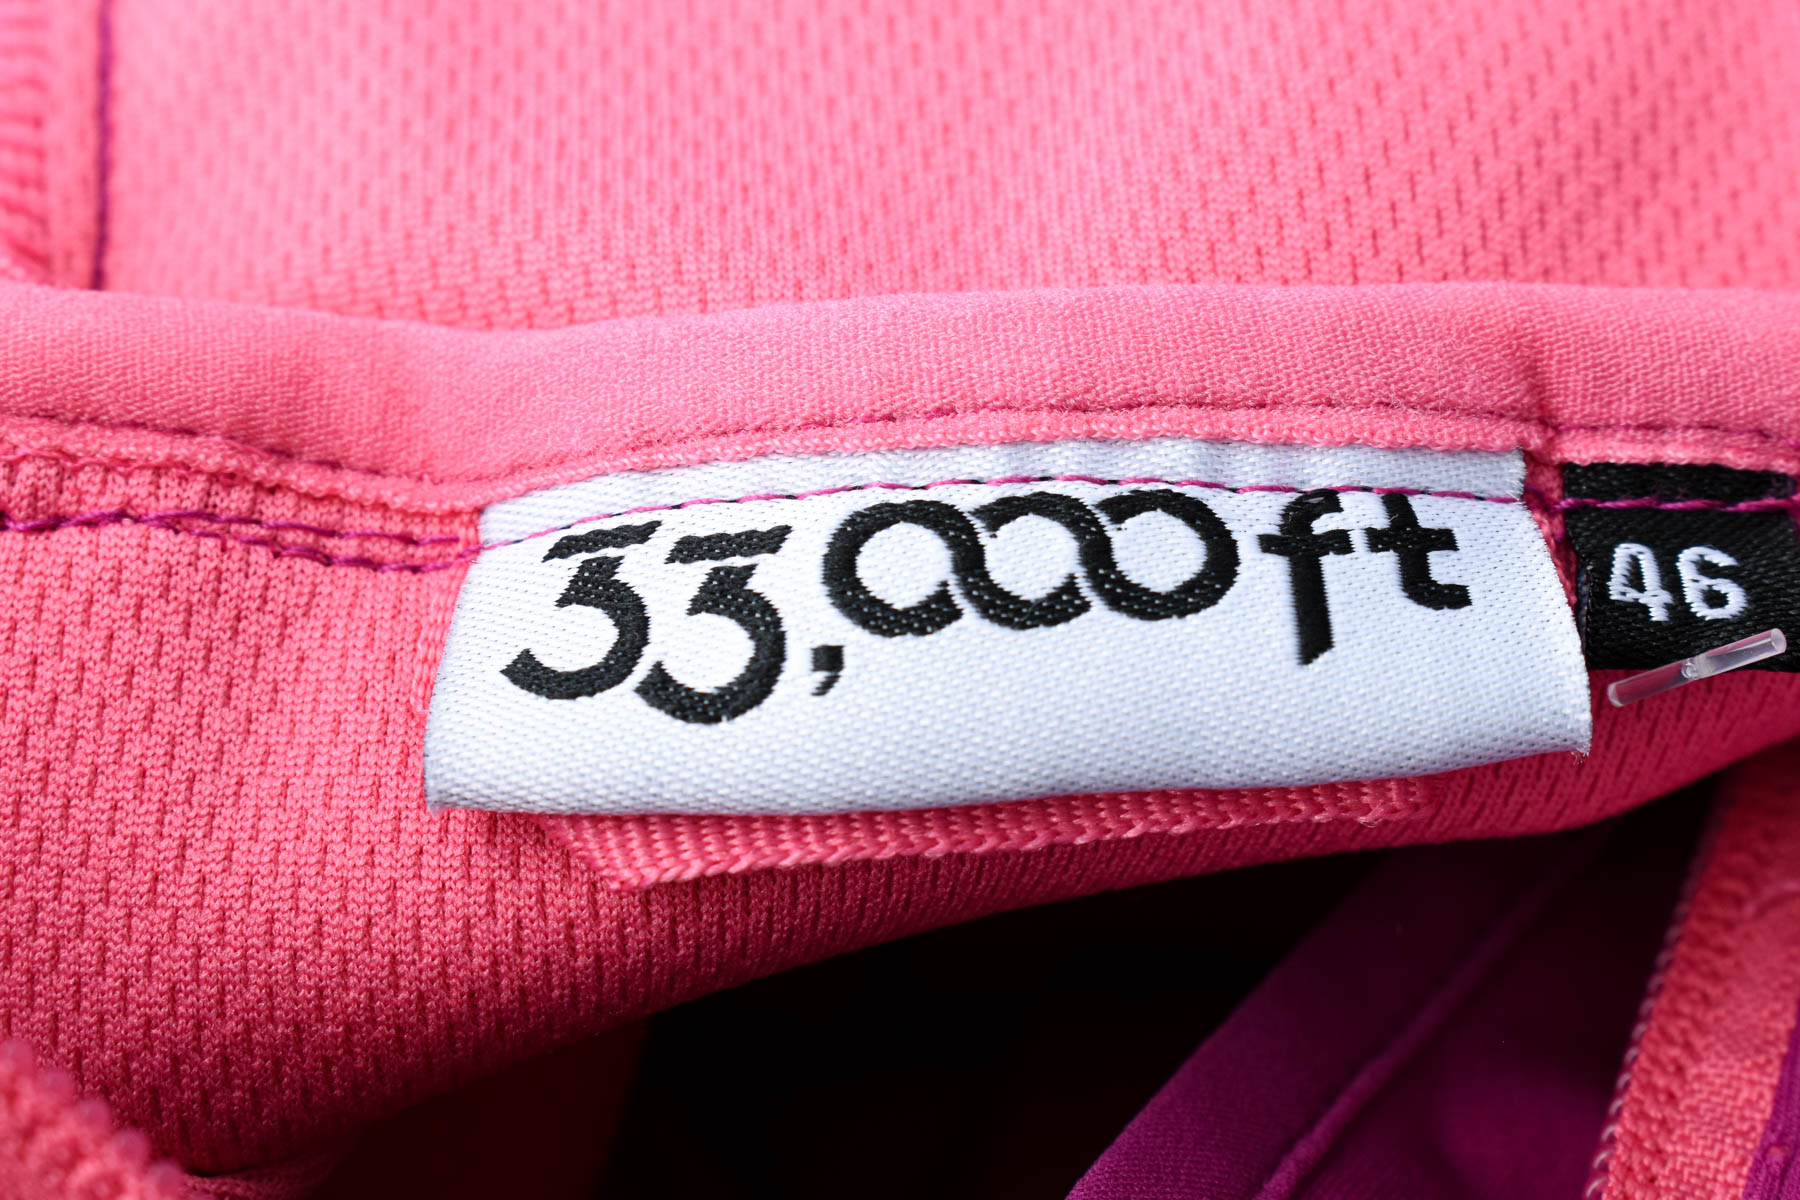 Female jacket - 33,000ft - 2